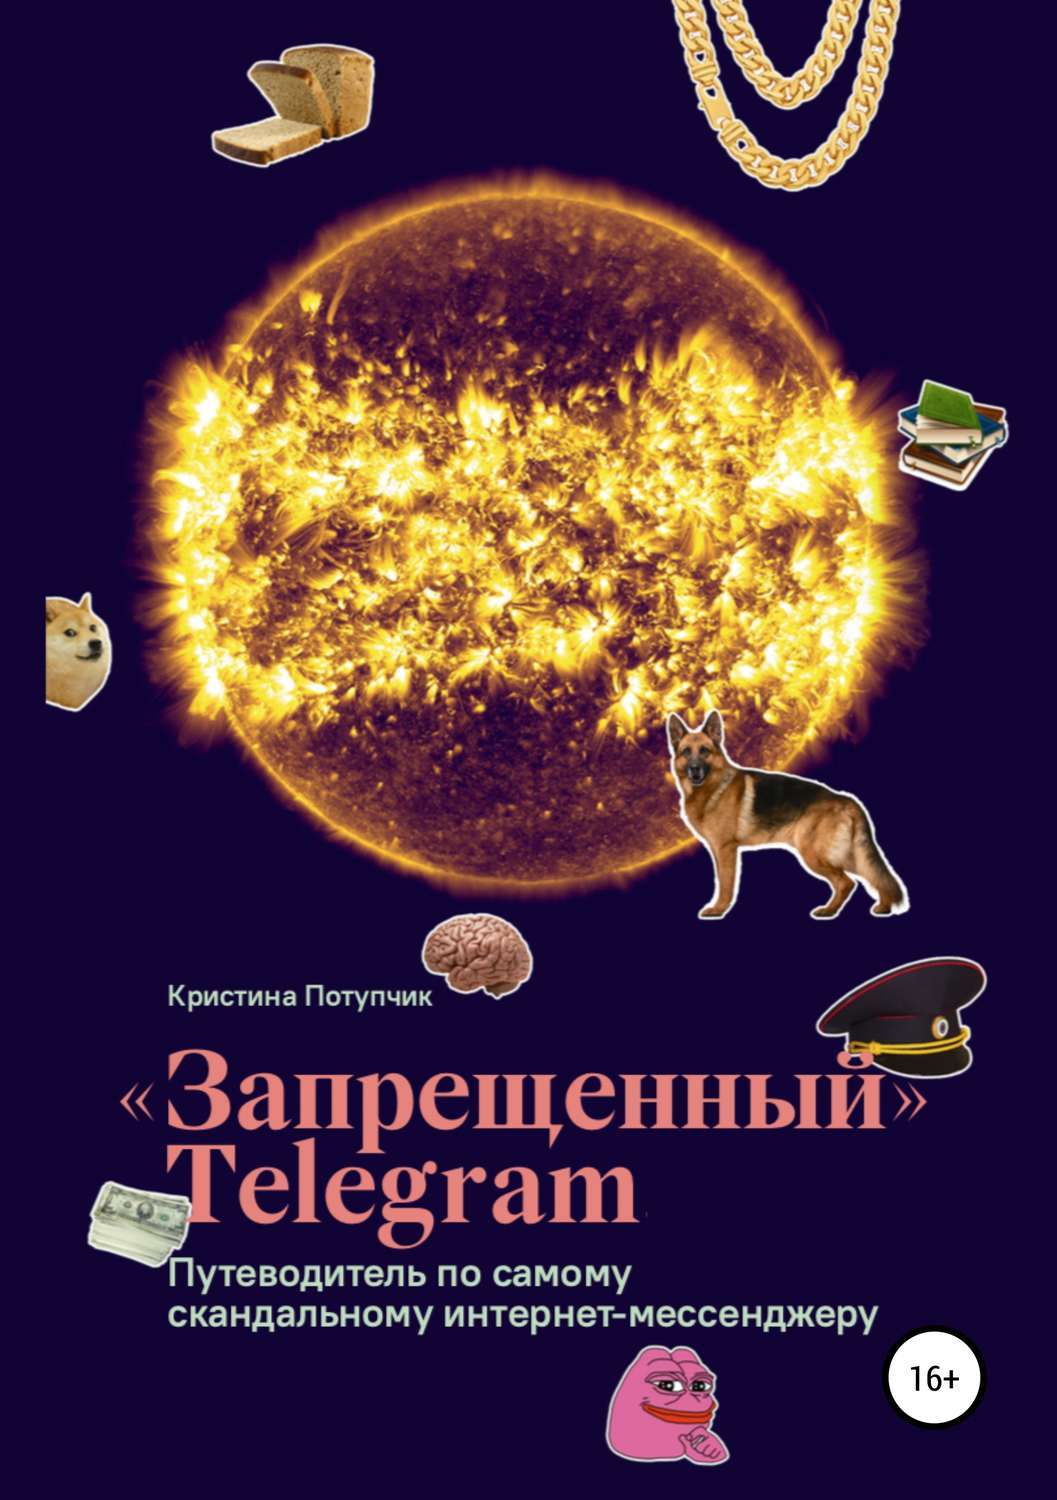 Книги в телеграмме бесплатно на русском фото 109